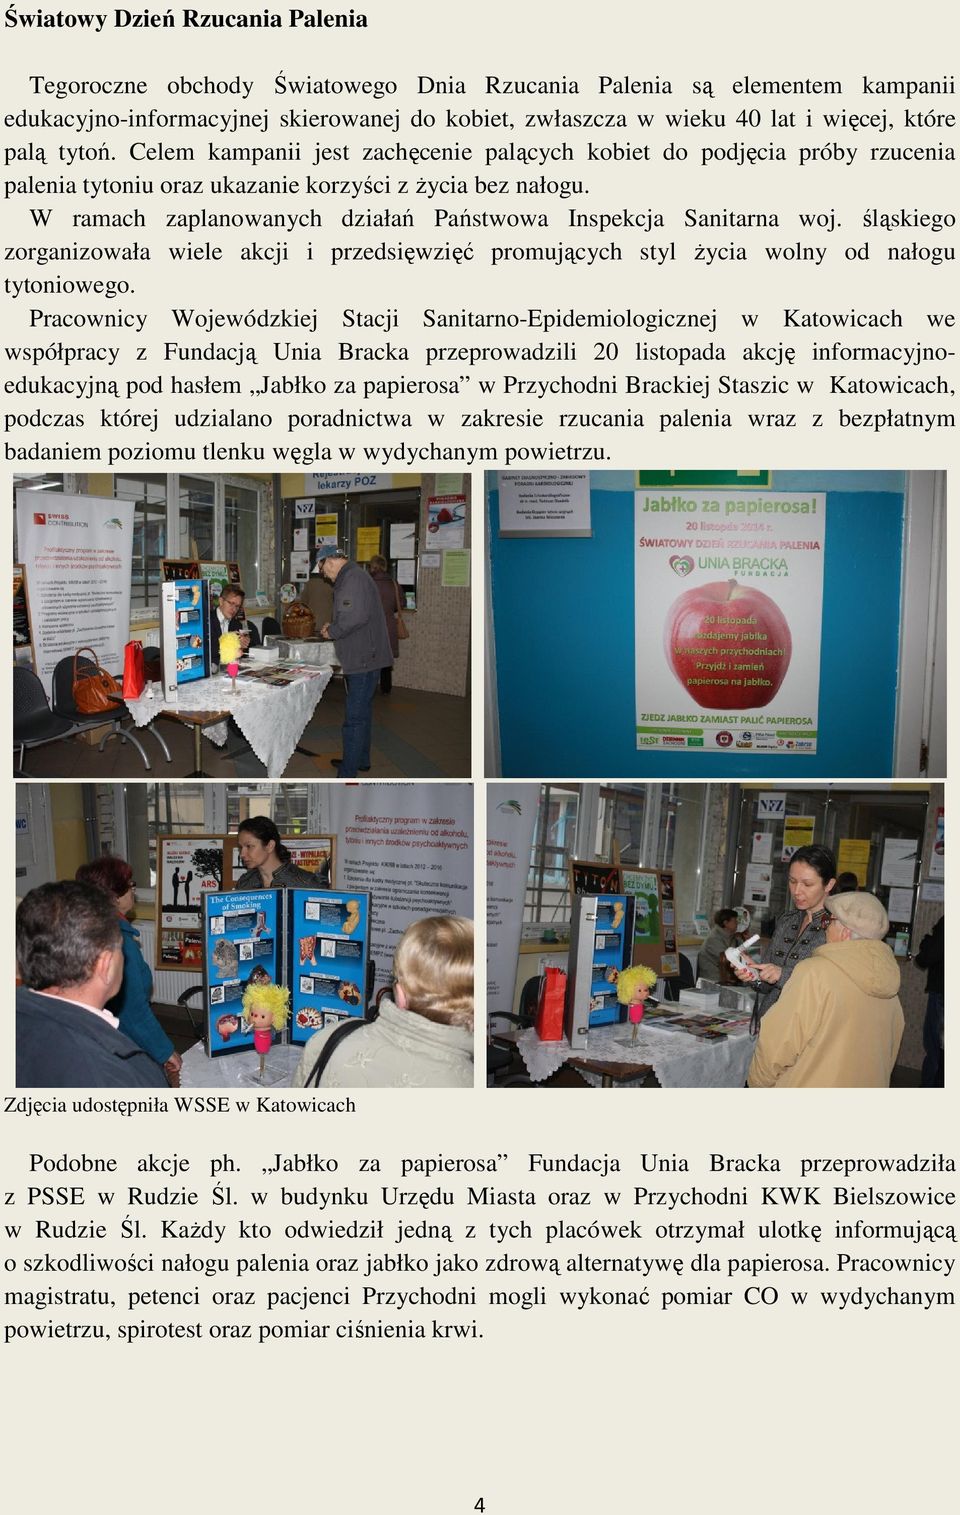 W ramach zaplanowanych działań Państwowa Inspekcja Sanitarna woj. śląskiego zorganizowała wiele akcji i przedsięwzięć promujących styl życia wolny od nałogu tytoniowego.